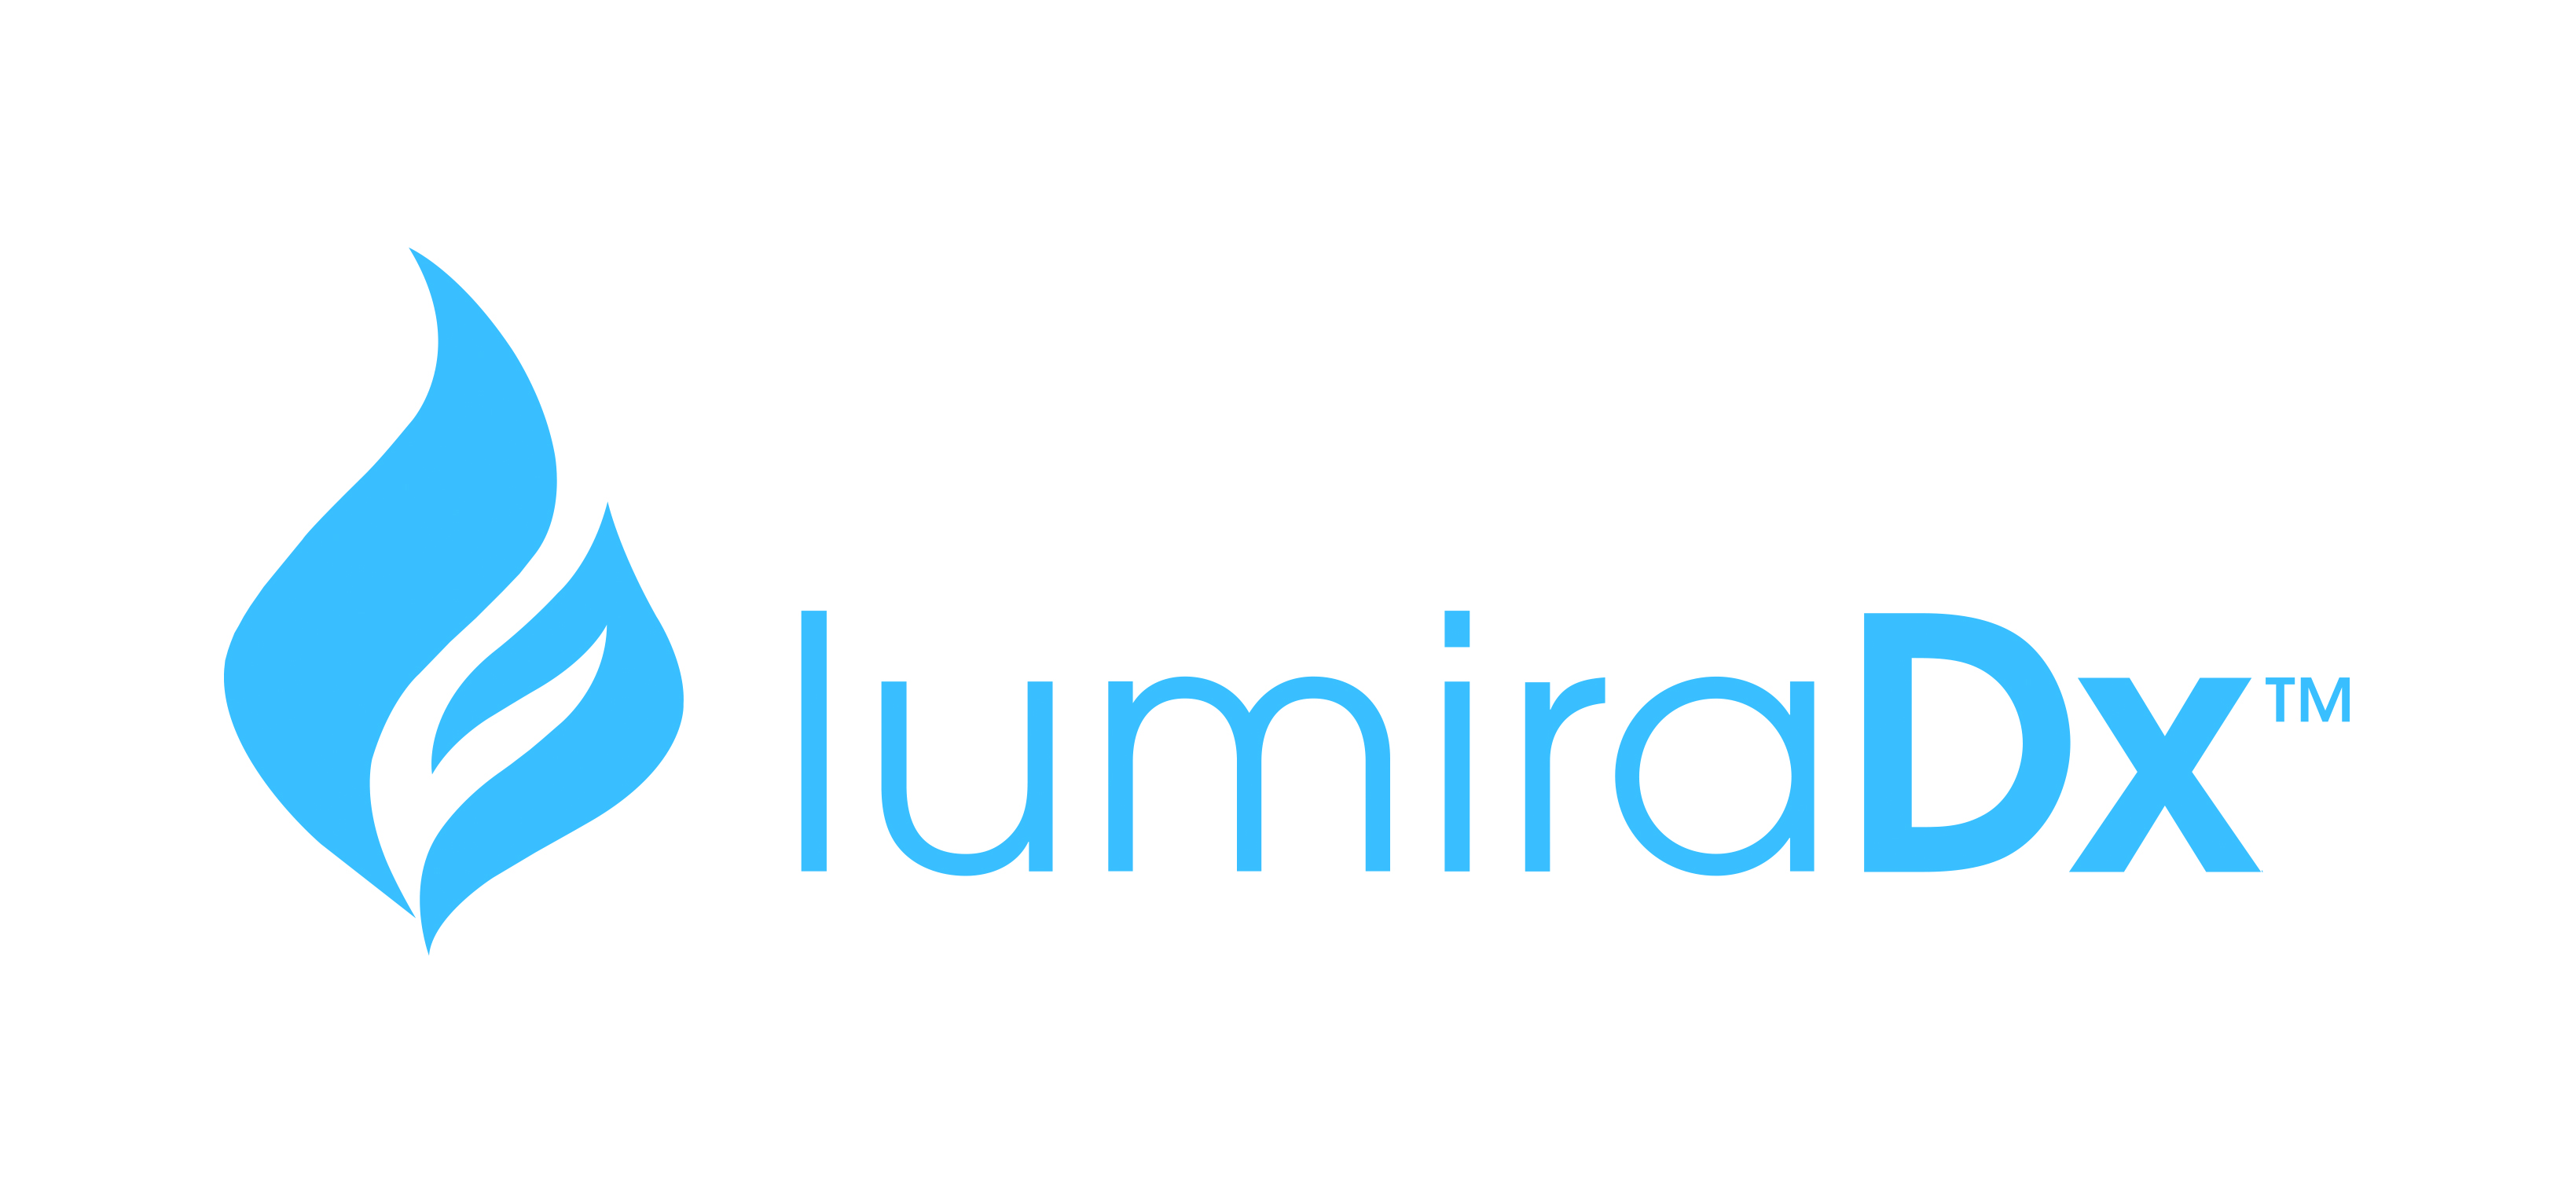 LumiraDx Limited